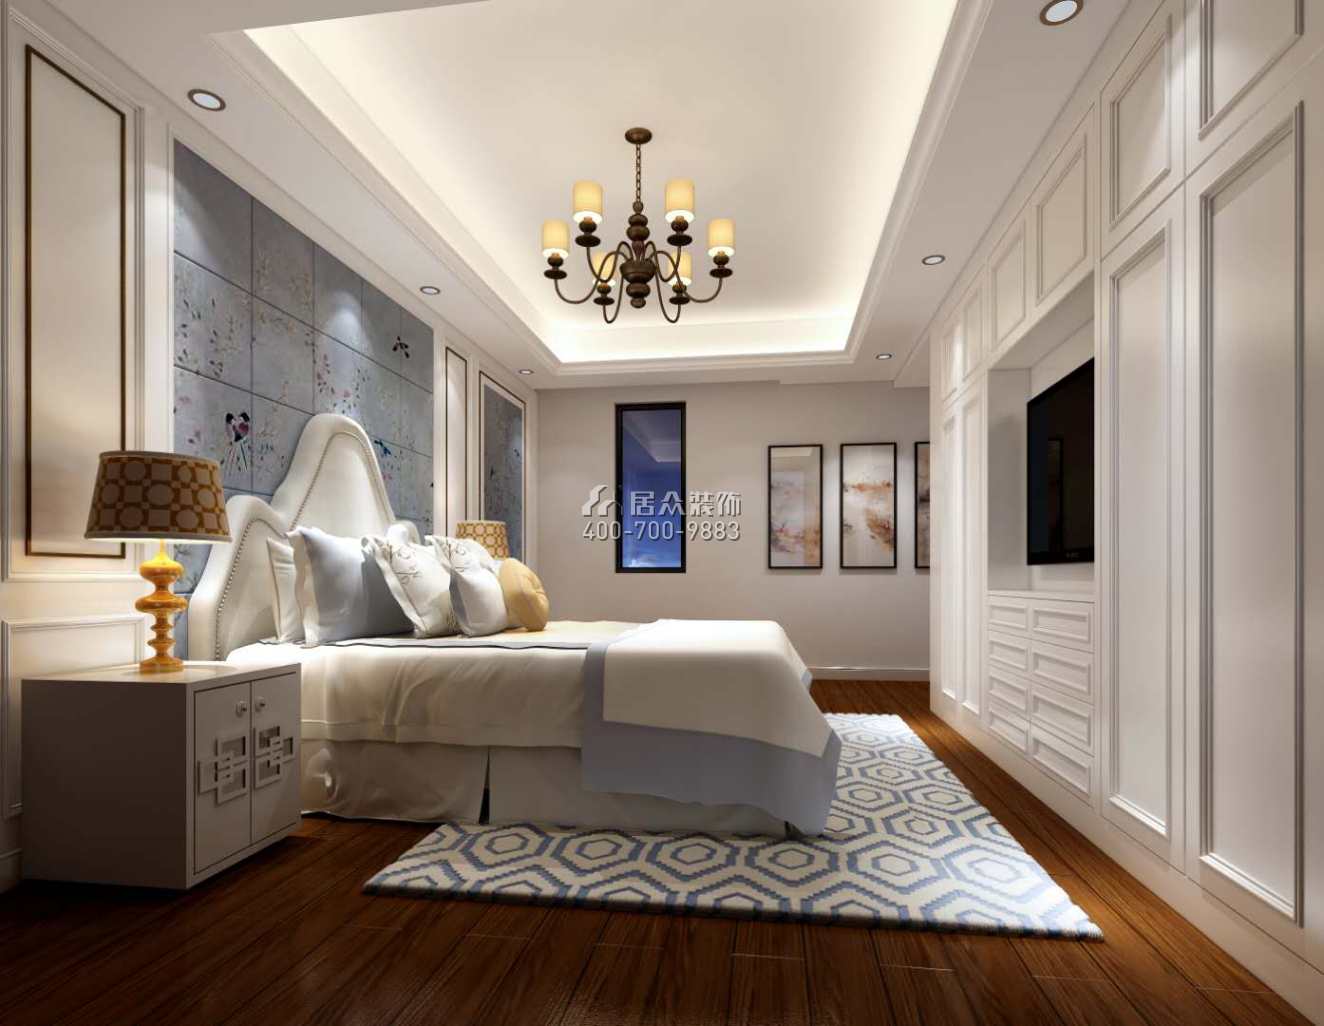 星河传奇花园一期120平方米美式风格平层户型卧室装修效果图